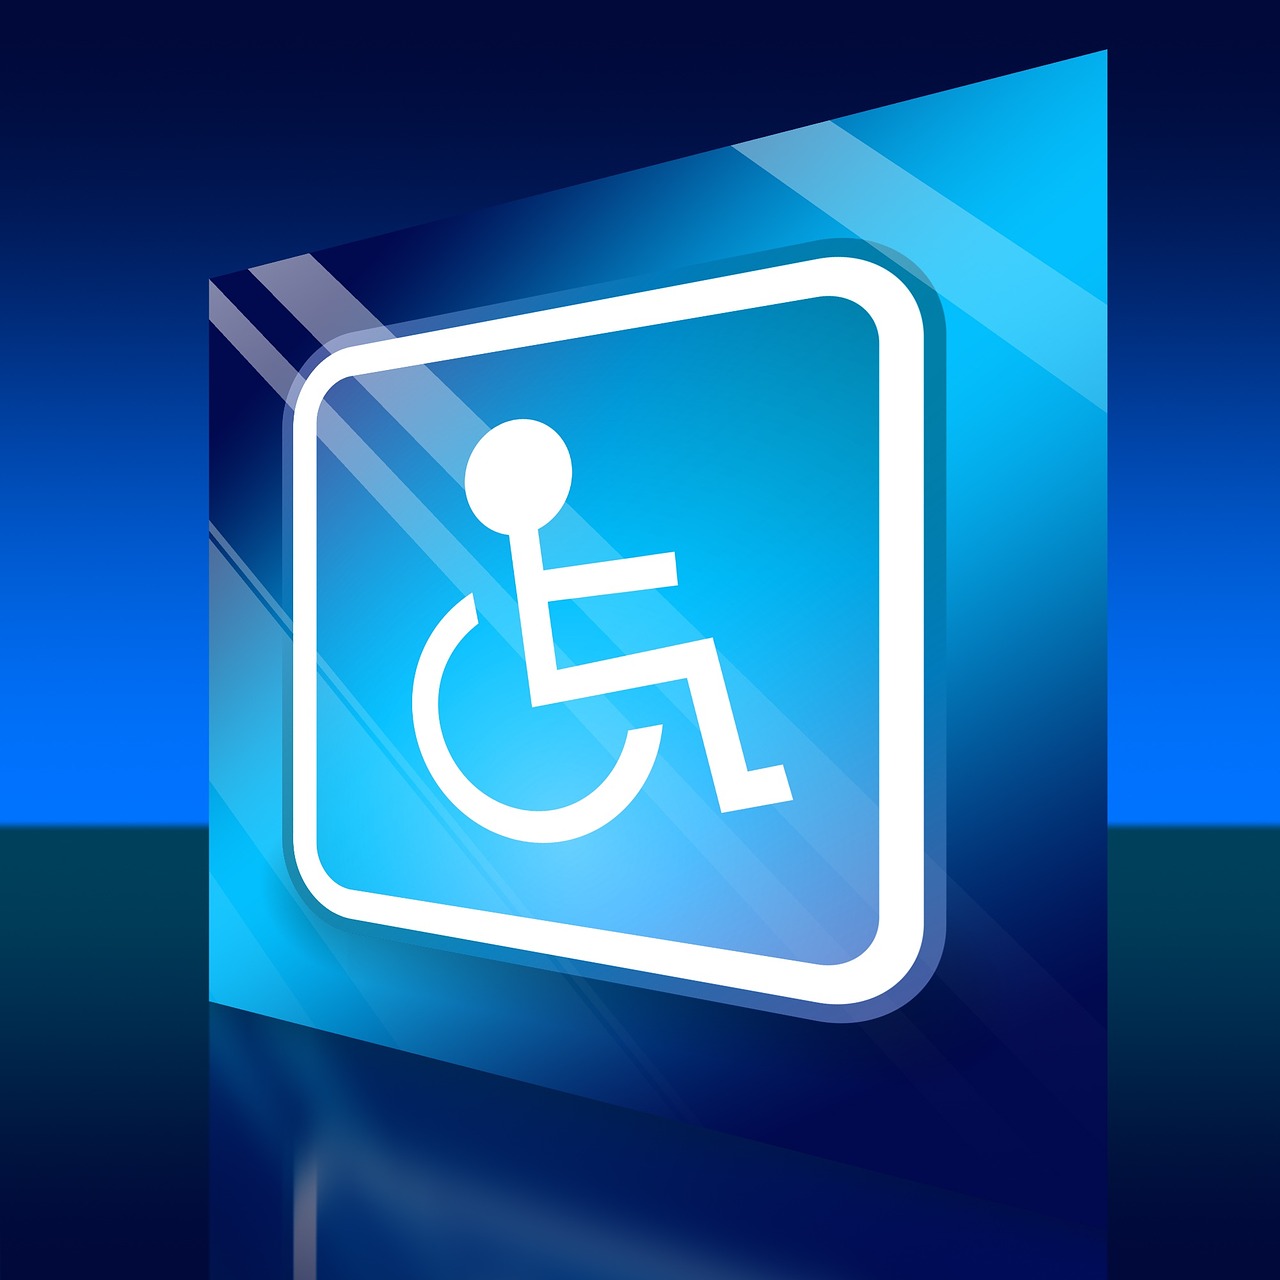 Neįgaliųjų Vežimėlis, Negalia, Negalia, Rolli, Judėjimas, Barjeras, Neįgalus, Neįgaliųjų Vežimėlių Vartotojai, Mobilumas, Fizinė Negalia